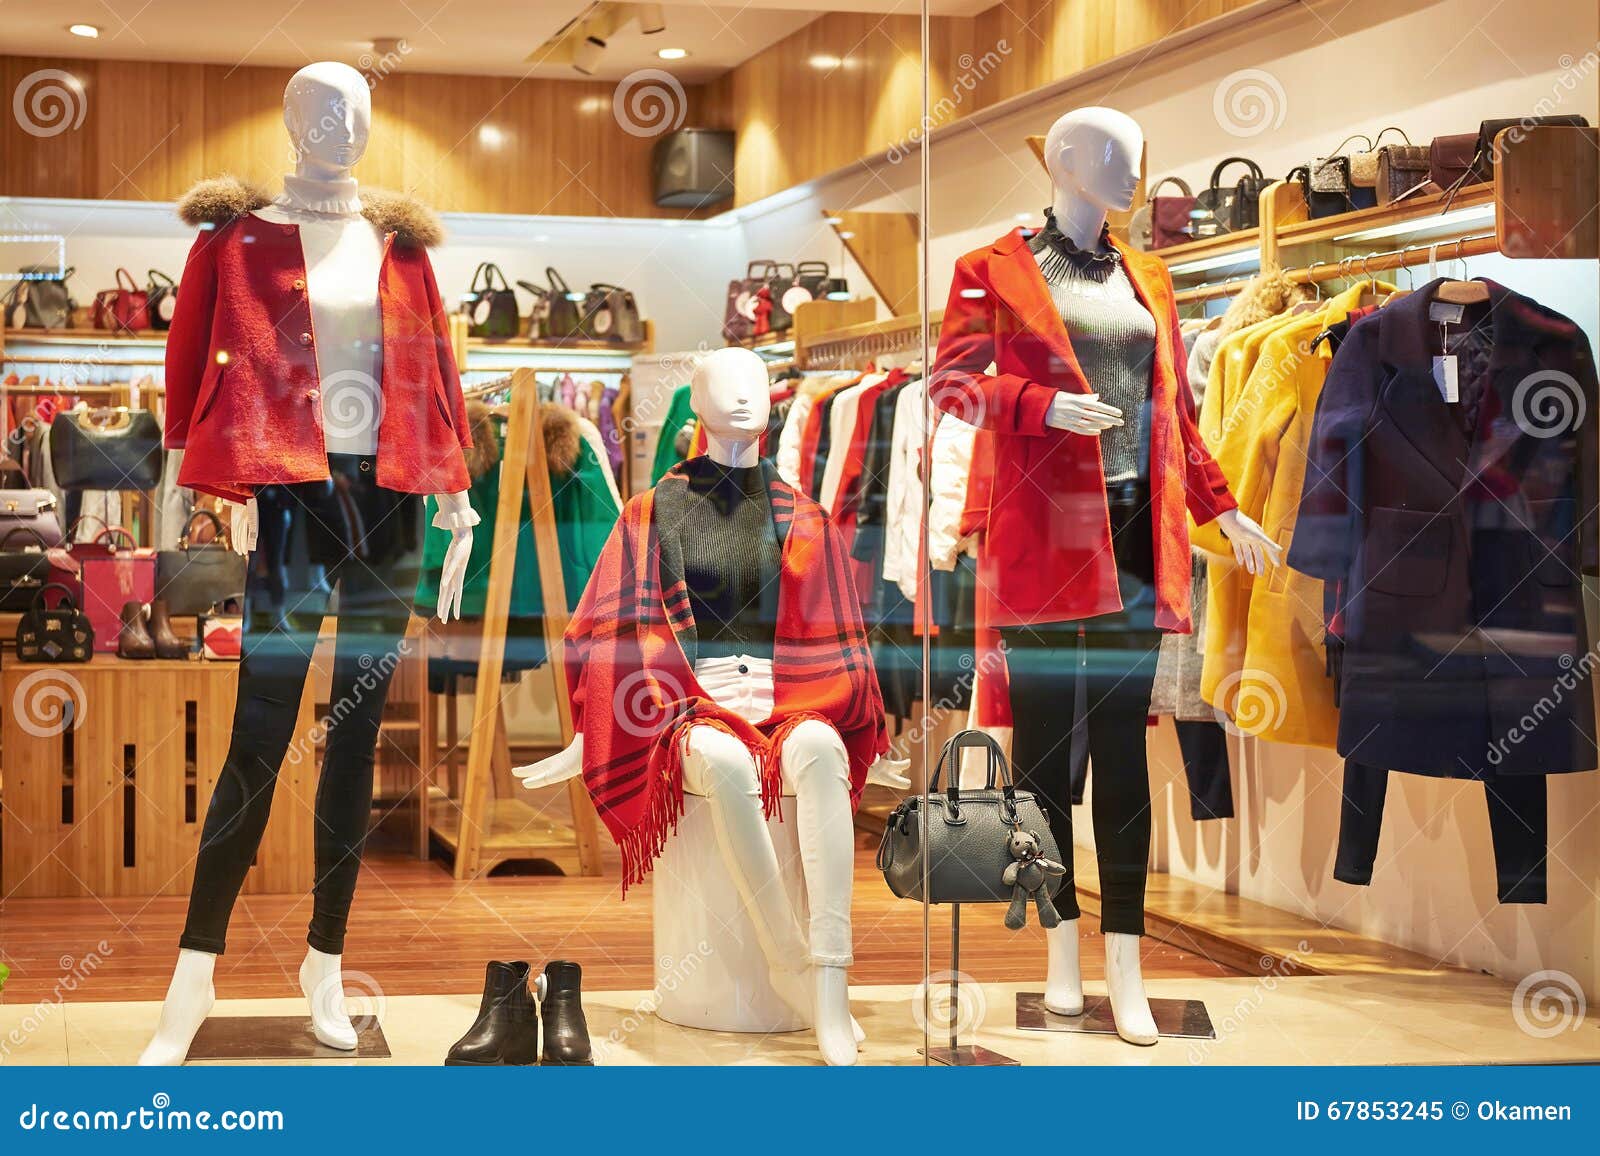 Female fashion shop window stock image. Image of entrance - 67853245